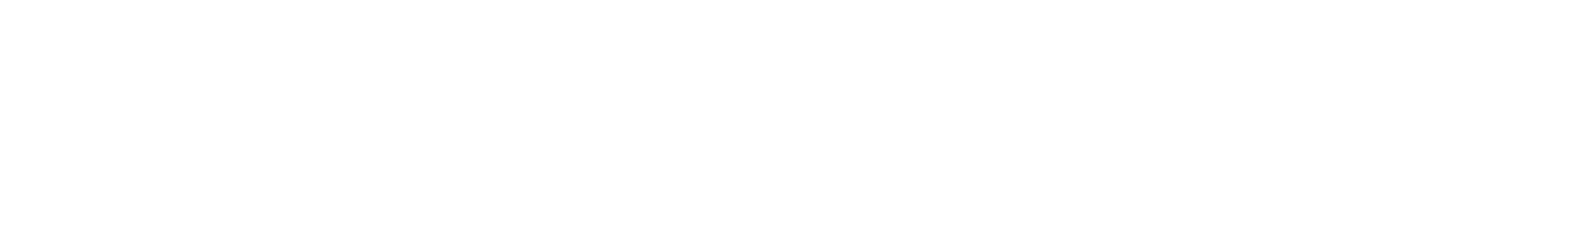 Garmin logo large for dark backgrounds (transparent PNG)